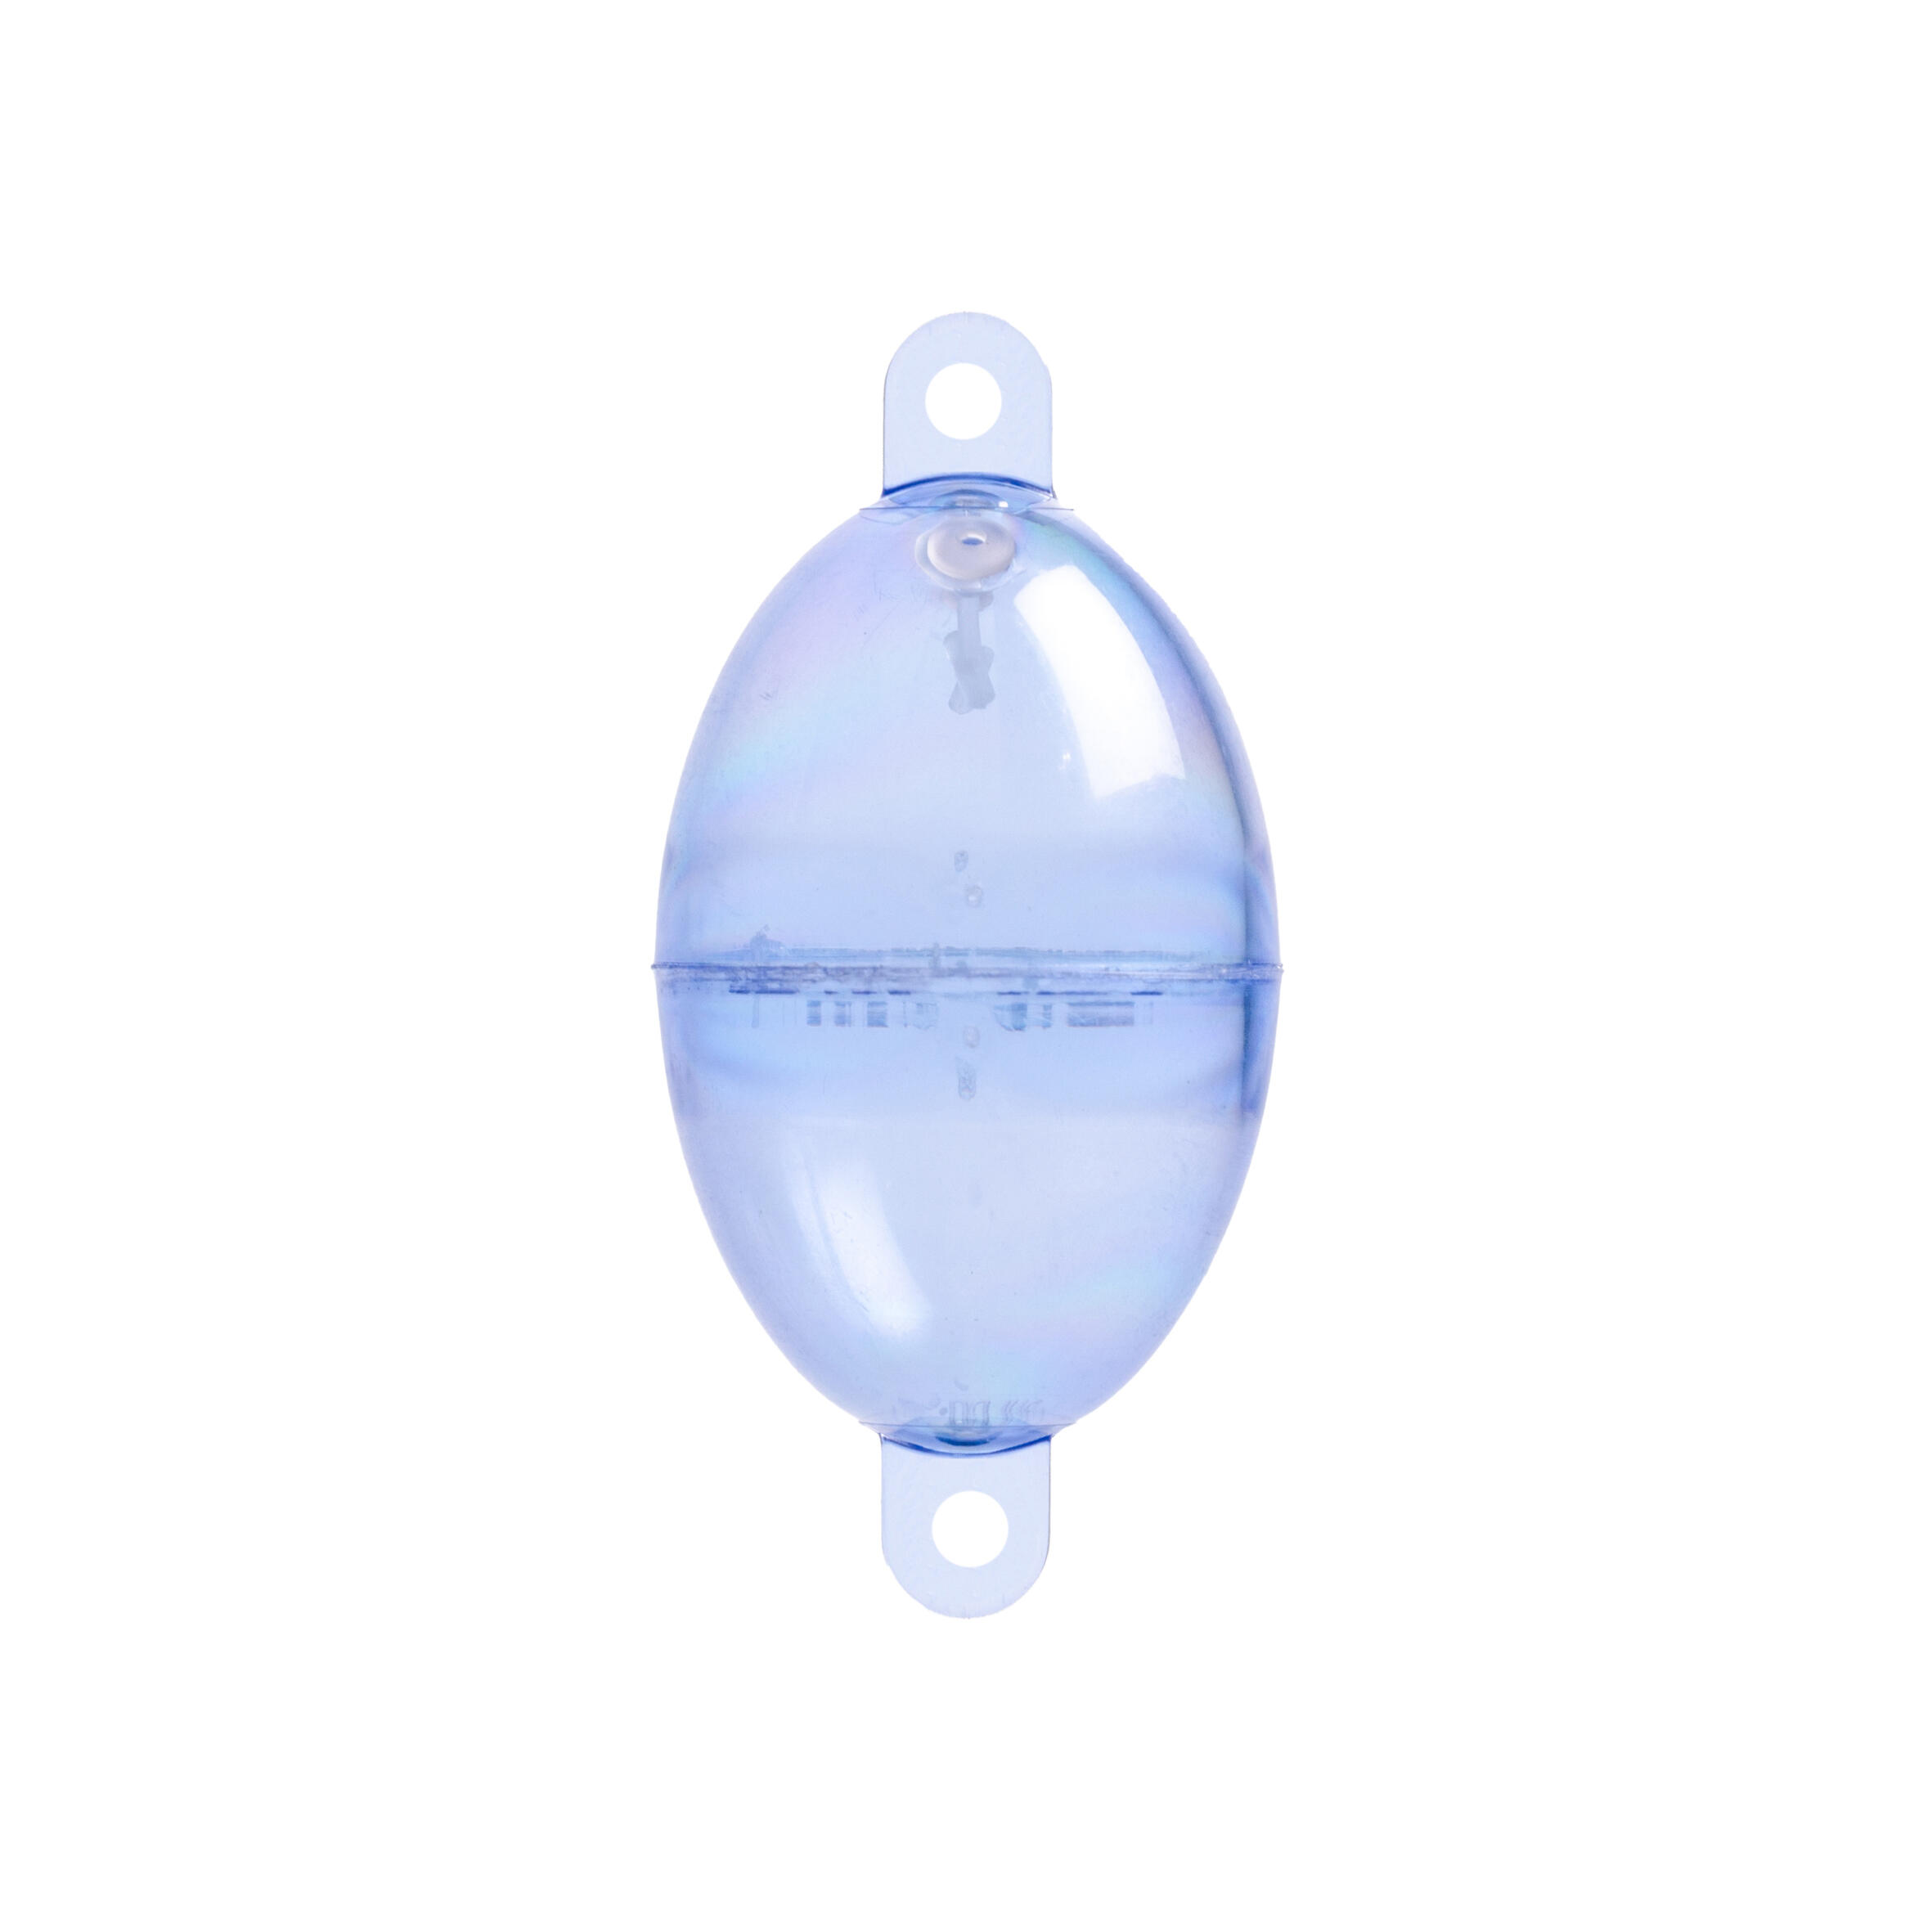 Oval Buldo N°4 clear x3 sea fishing bubble float 3/3